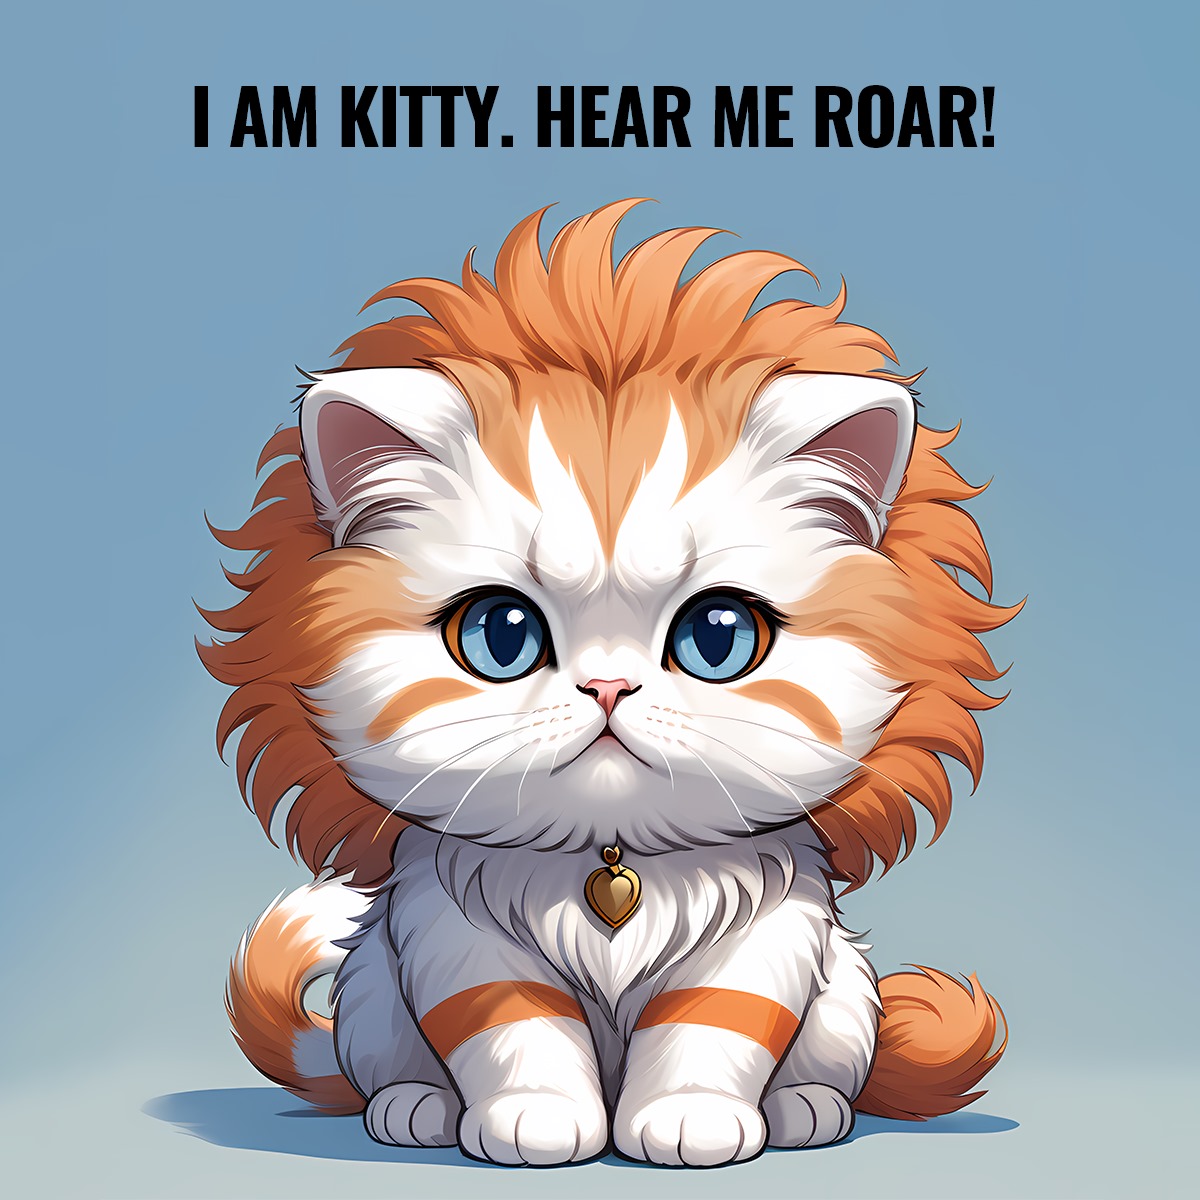 I AM KITTY. HEAR ME ROAR!